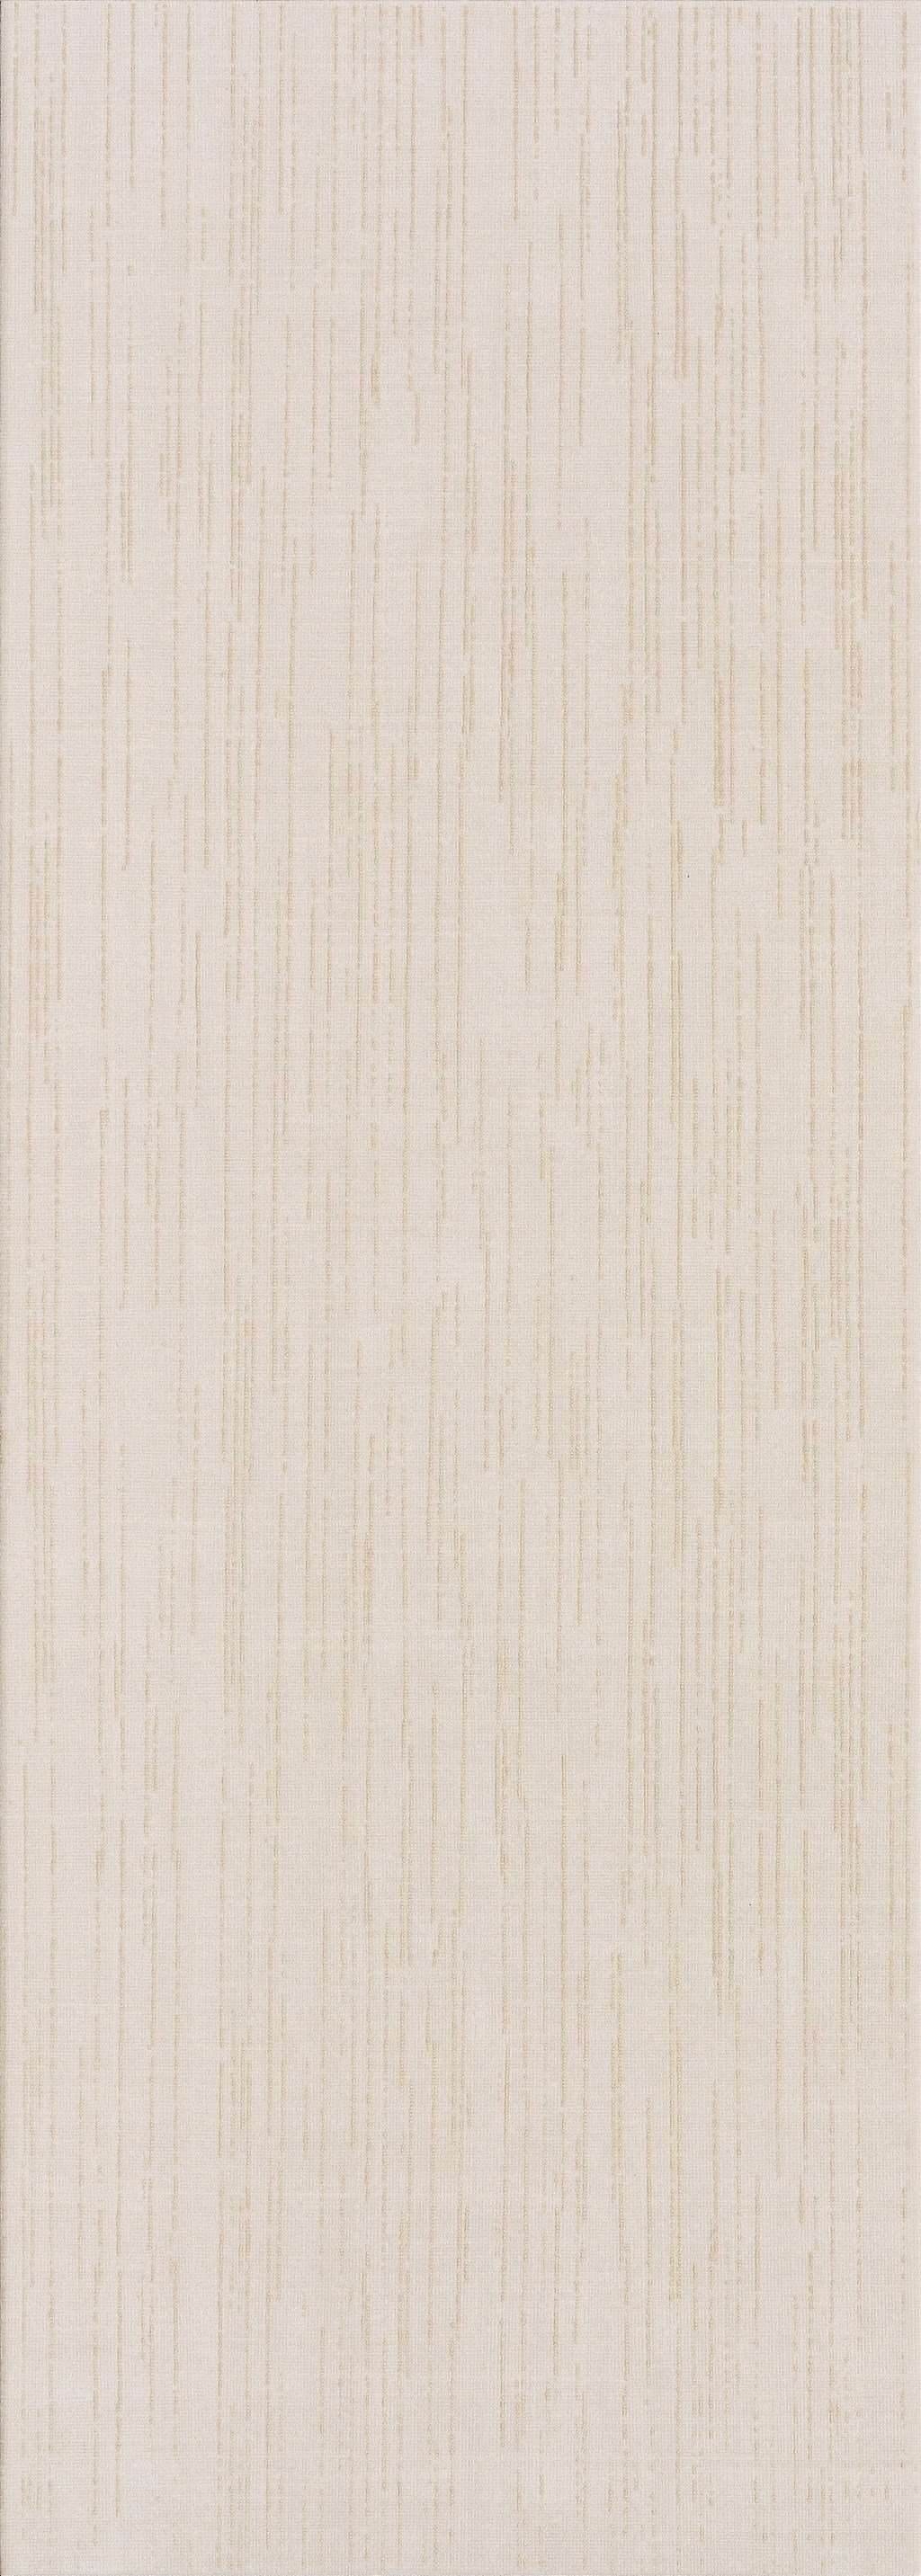 Керамическая плитка Mapisa Violetta Beige, цвет бежевый, поверхность глянцевая, прямоугольник, 253x706